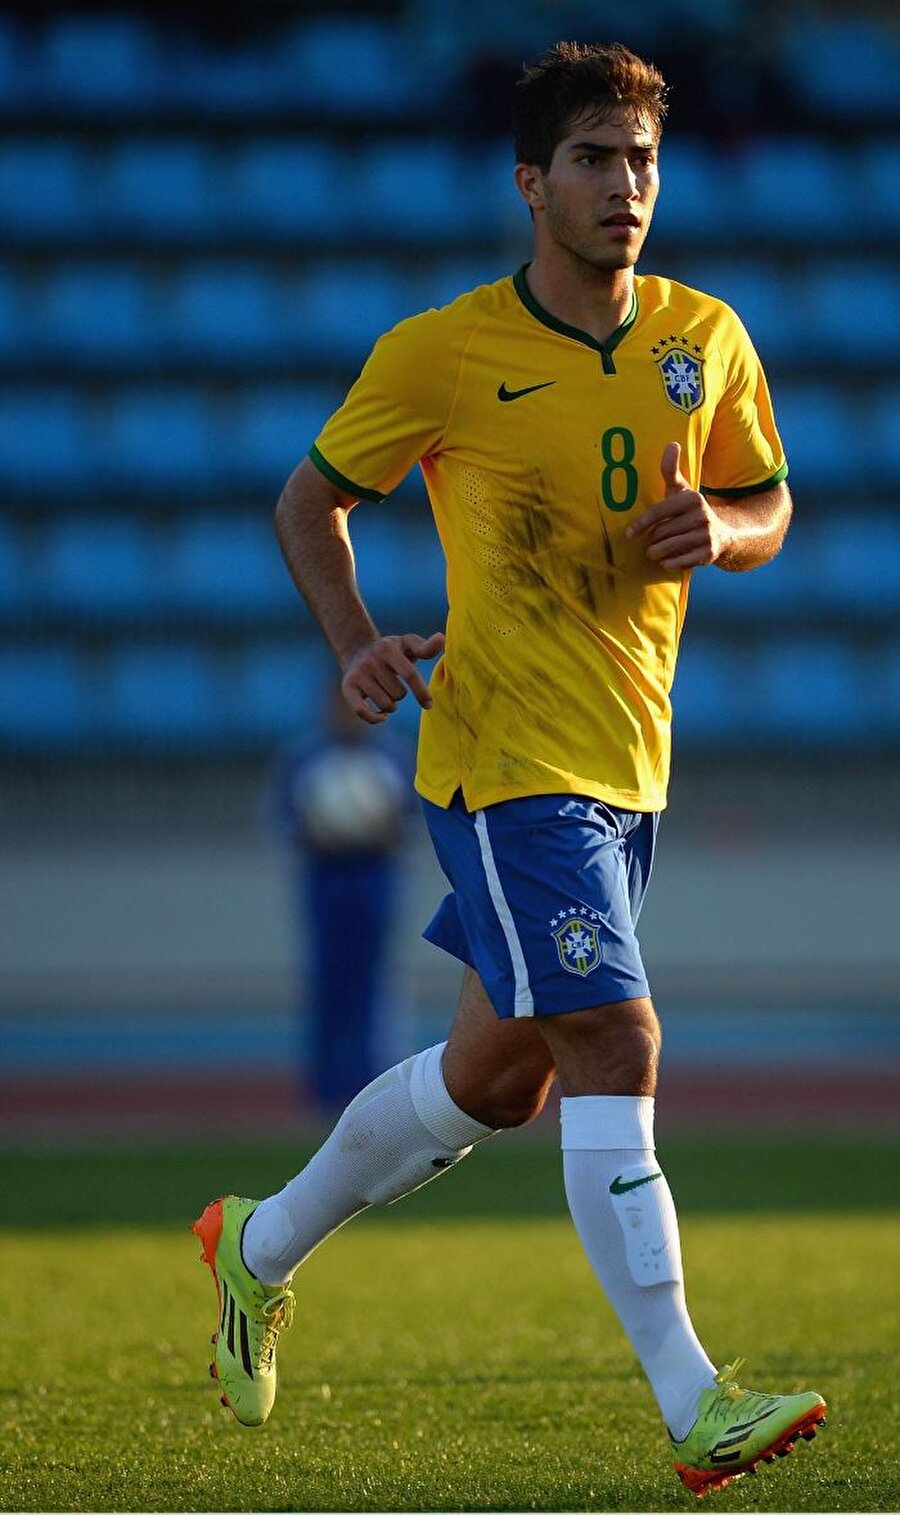 2005 yılında başladı

                                    Ön libero mevkiinde görev alan Silva, 2005 yılında AE Ovel'in altyapısında kariyerine adım attı. 
                                